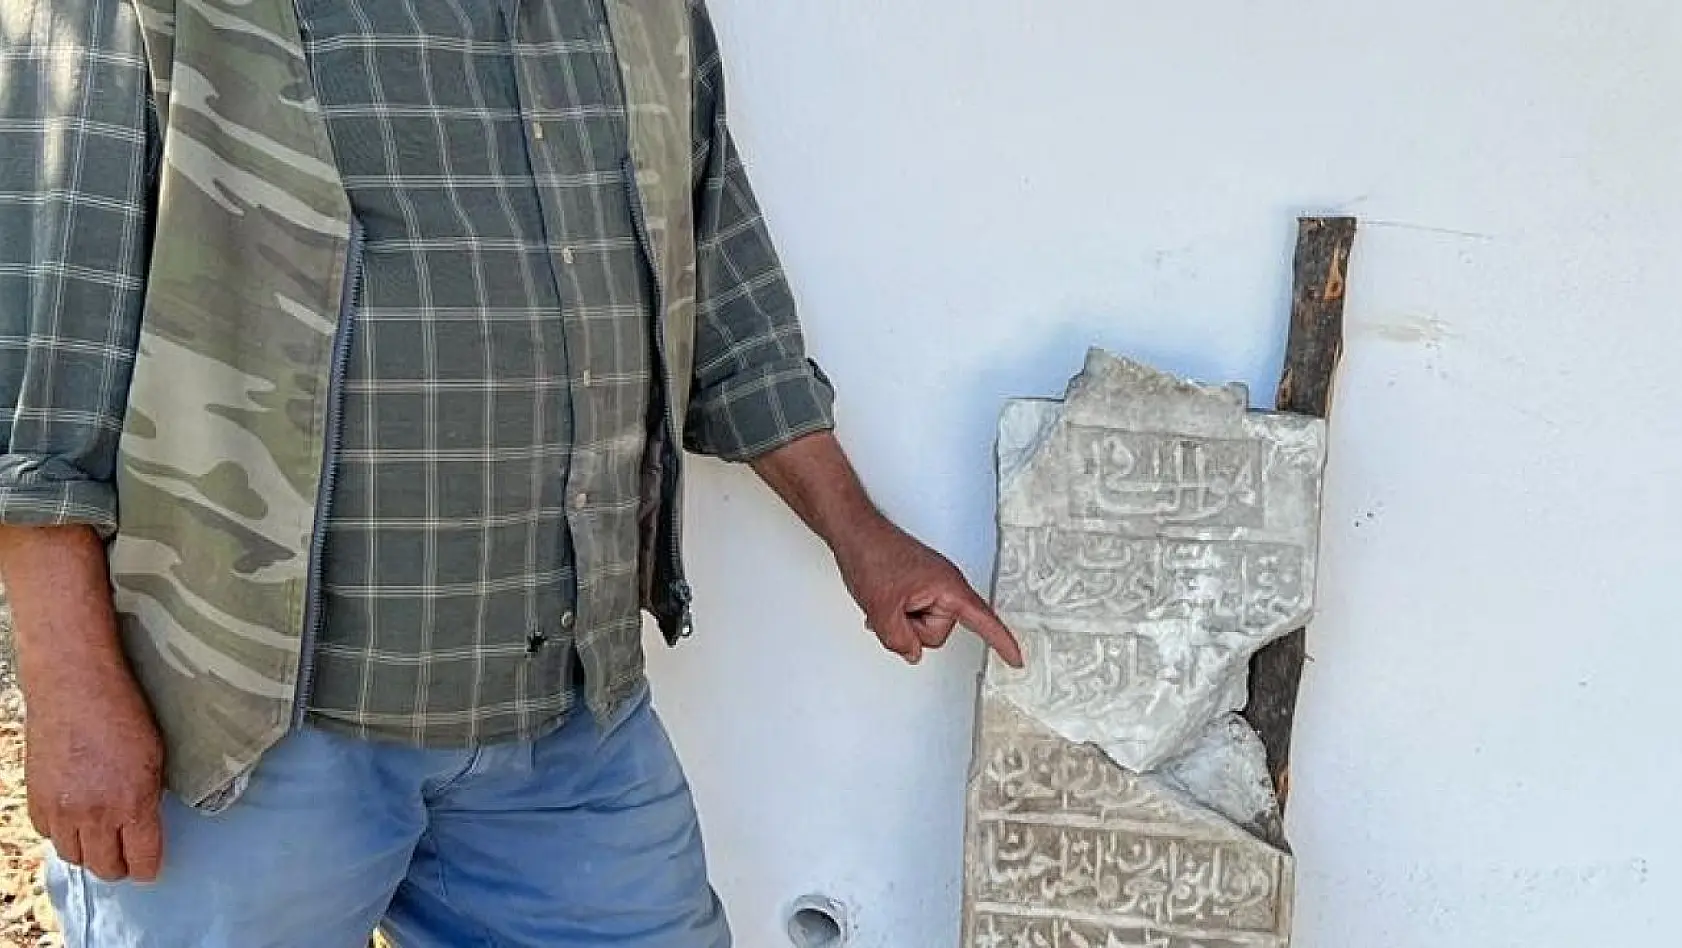 Köyceğiz'de çöplüğe atılmış 200 yıllık mezar taşı bulundu